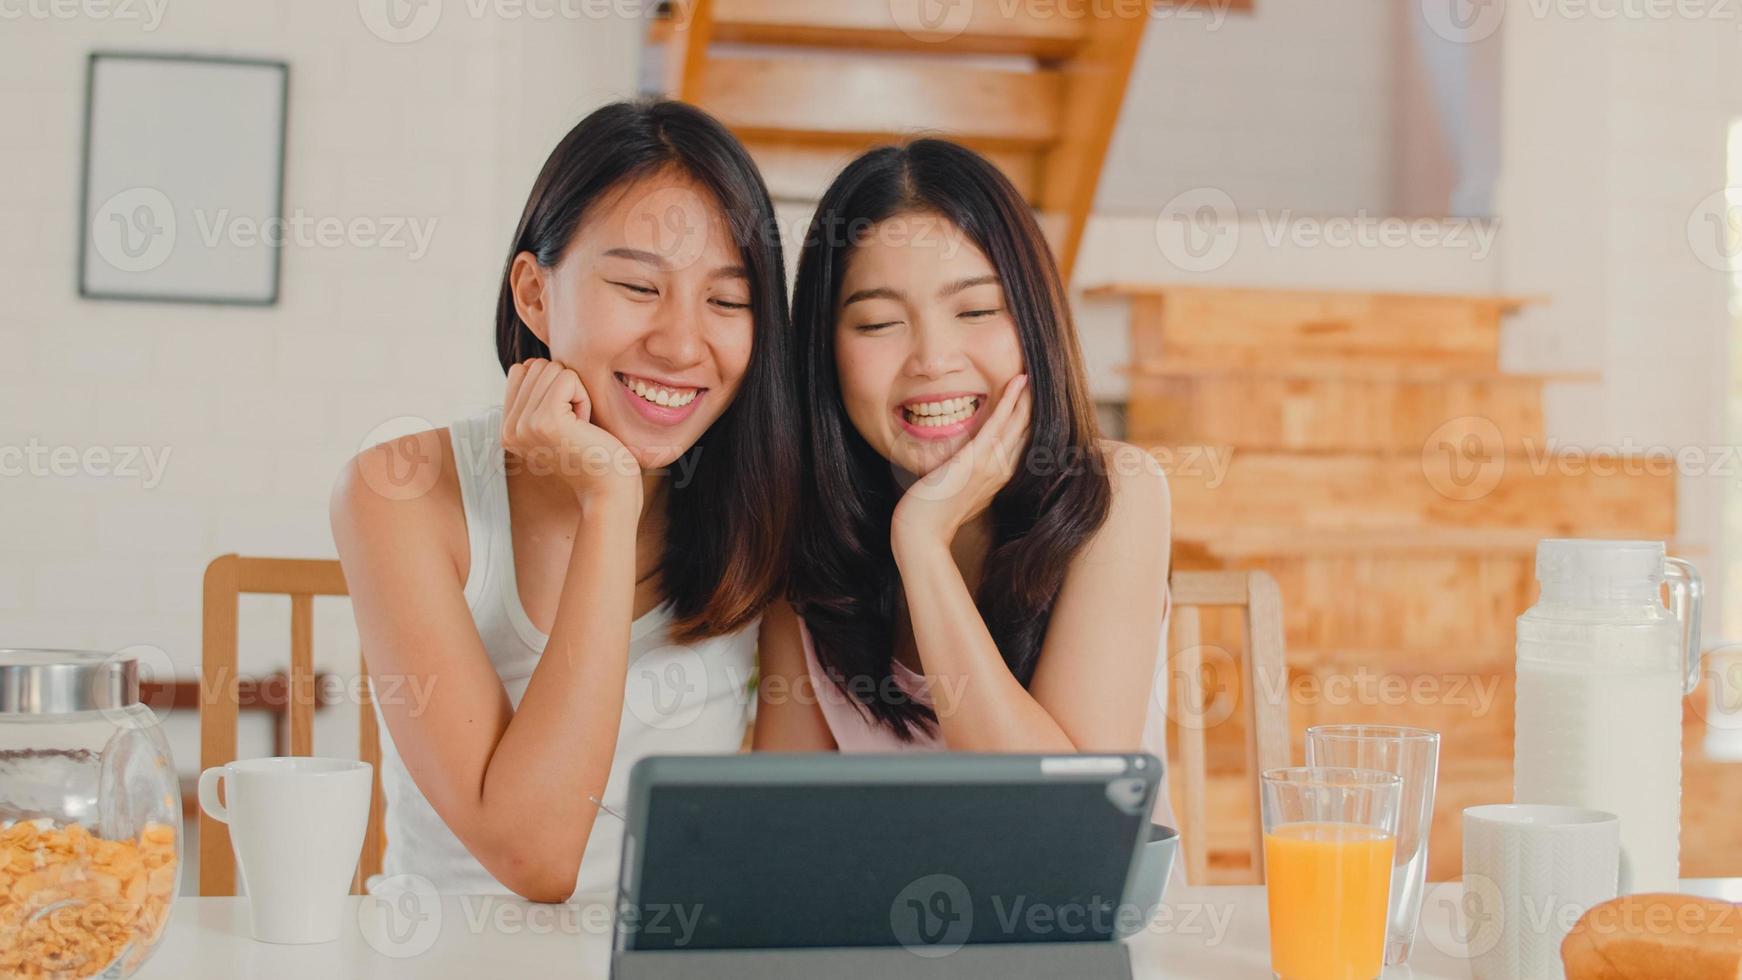 asiatisk lesbisk lgbtq influencer kvinnor par vlogg hemma, unga asien älskare flickor glada använda surfplatta spela in vlogg video i sociala medier medan du äter frukost i köket hemma på morgonen koncept. foto